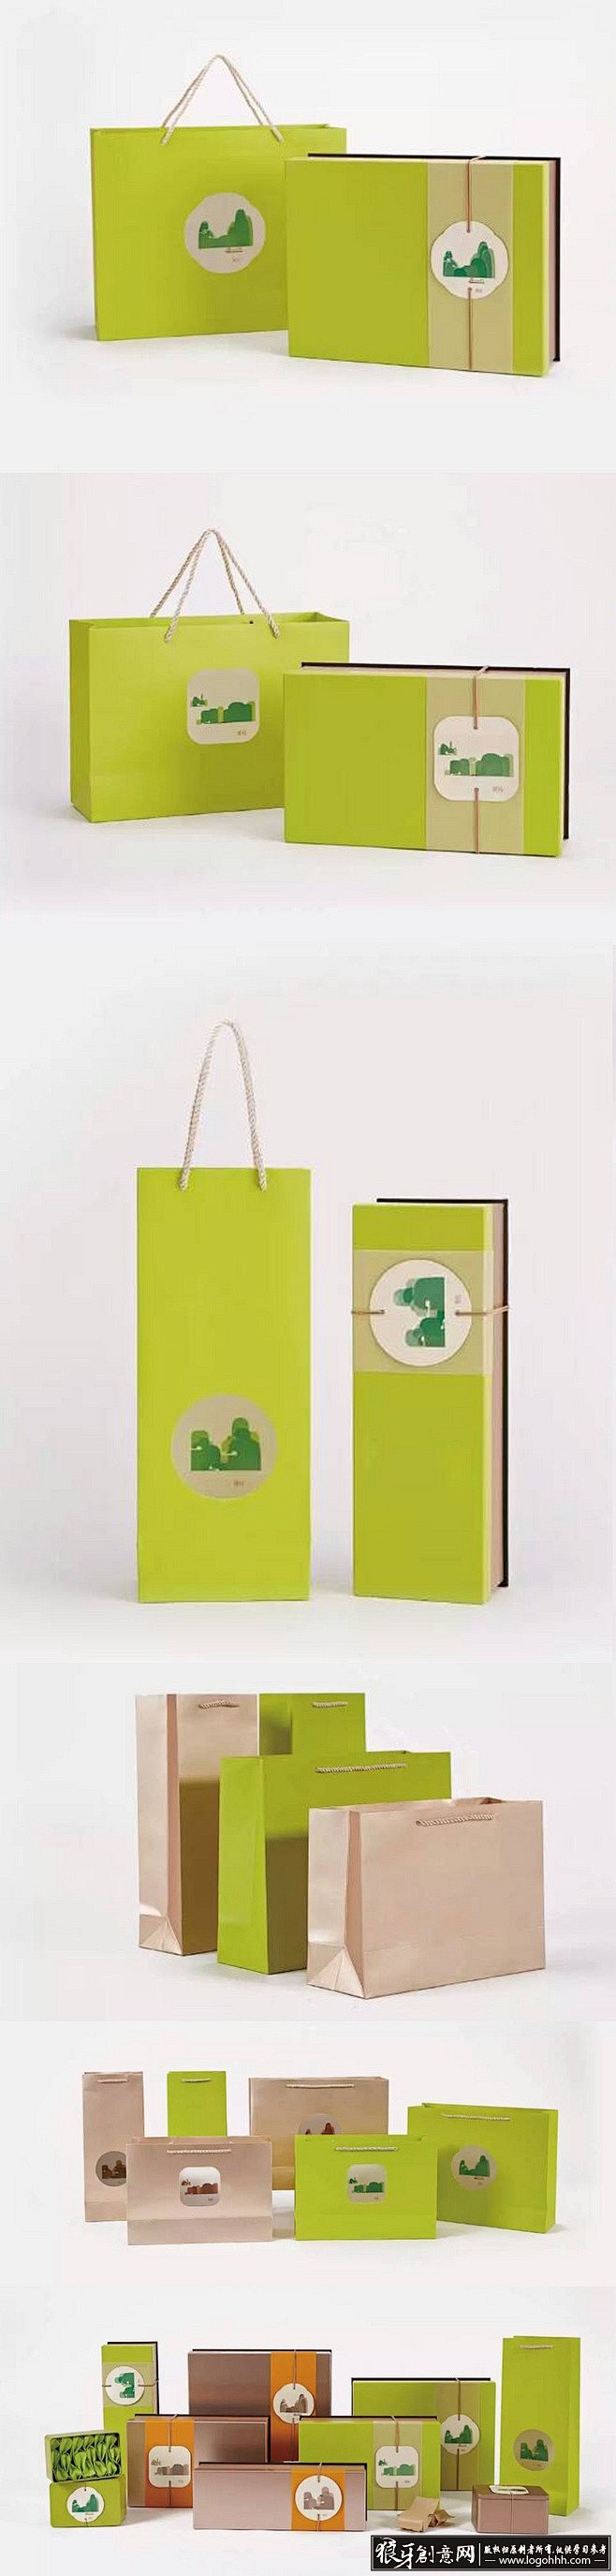 有机盒茶叶包装盒茶叶礼盒绿色元素创意茶叶手提袋包装设计绿色环保有